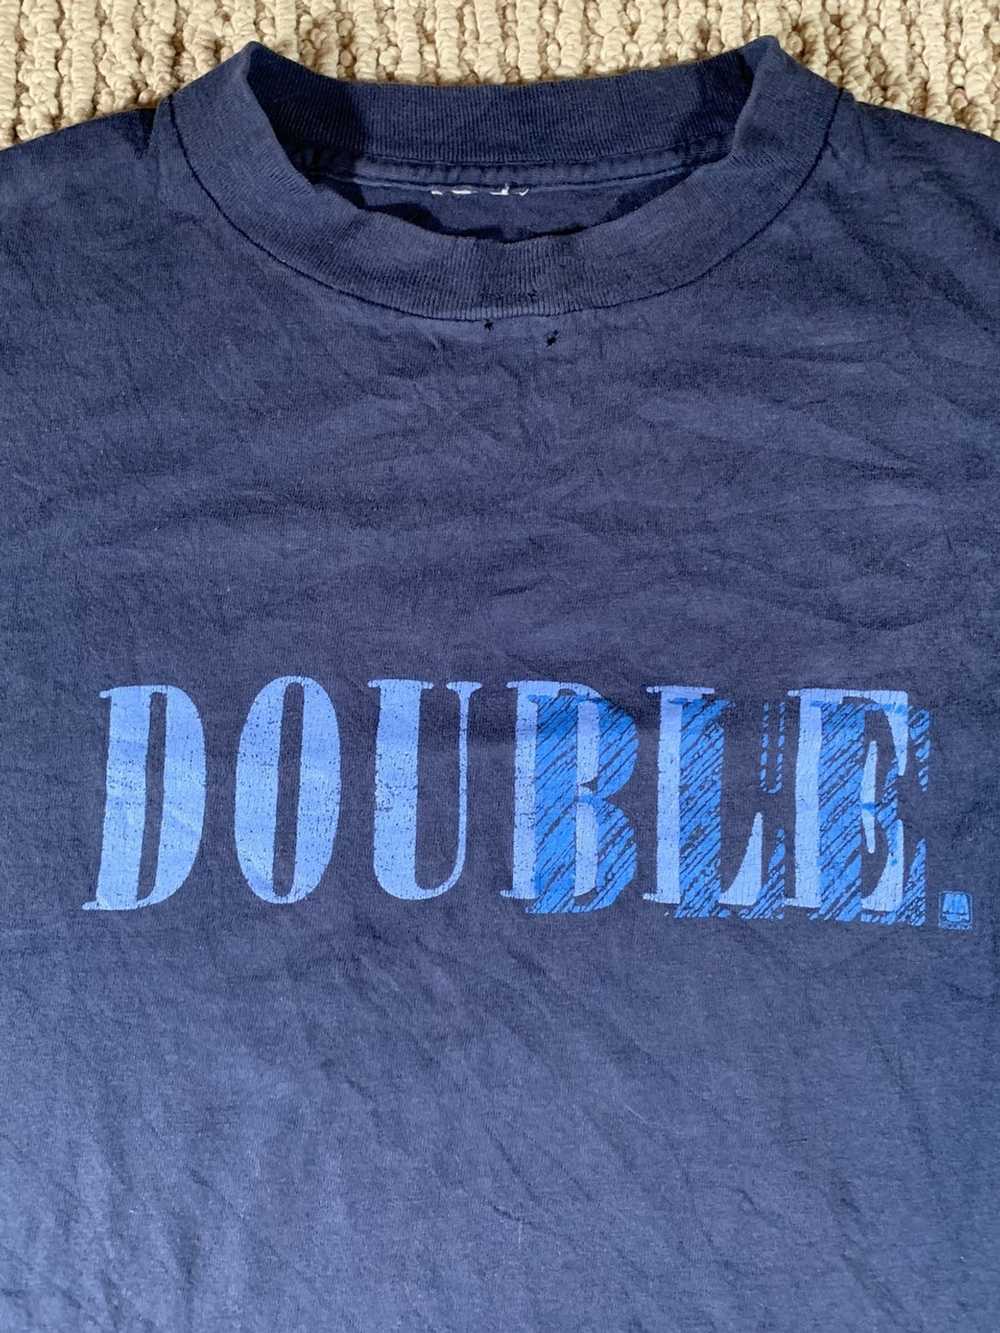 Vintage A&M Records Double Dou3ble T-Shirt Large … - image 2